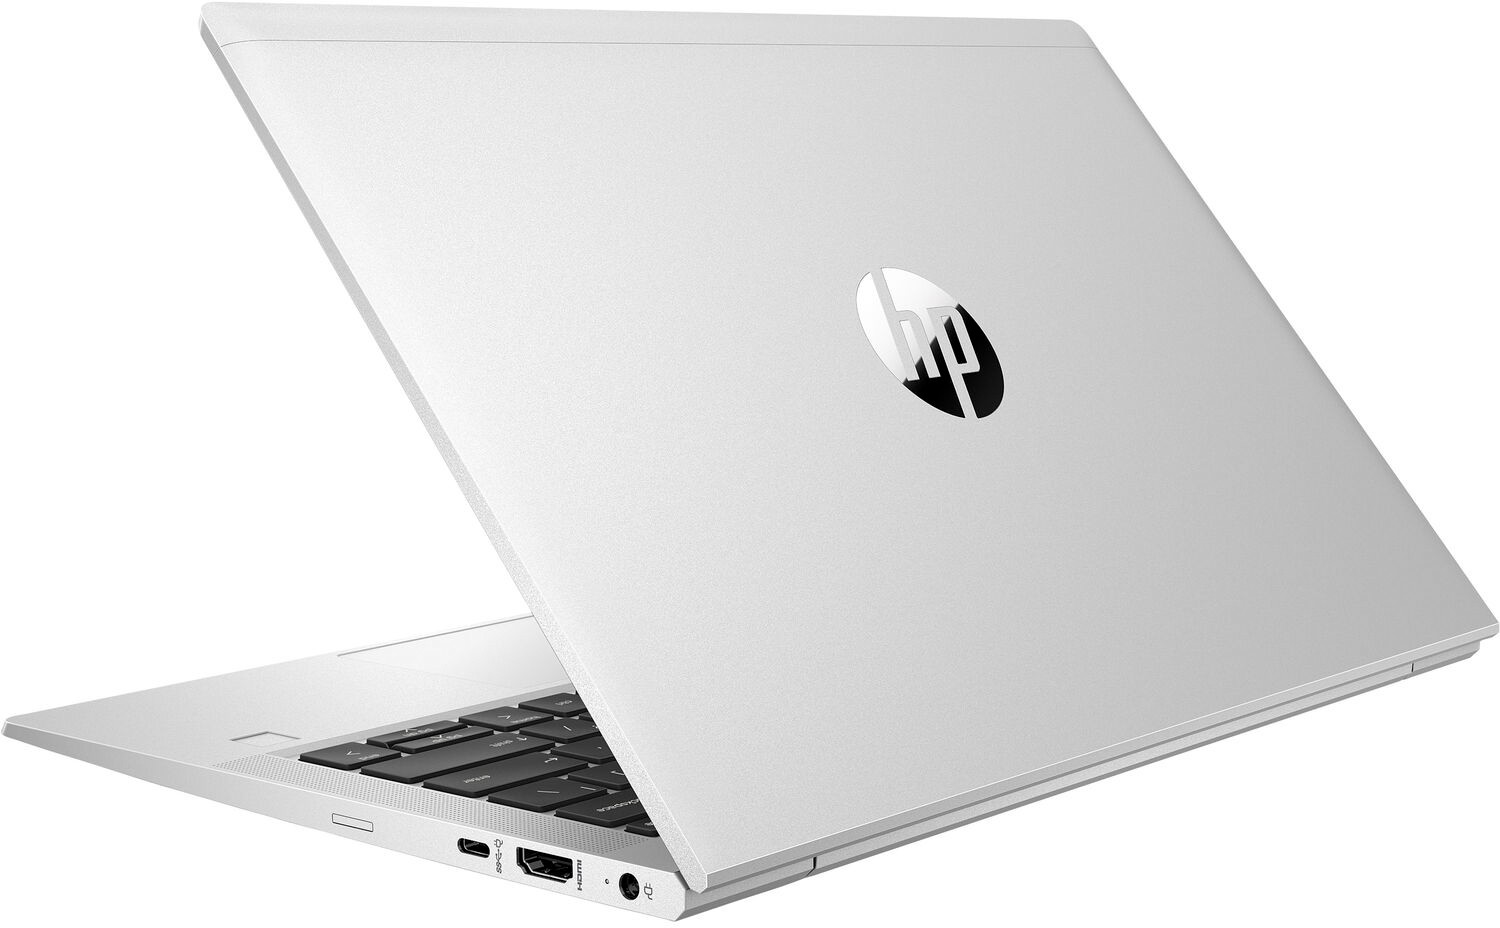 Ноутбук HP ProBook 635 Aero G7 AMD Ryzen 5 4500U 2.3GHz,13.3" FHD (1920x1080) IPS AG,8Gb DDR4-3200MHz(1),256Gb SSD NVMe,Al+Mg Case,53Wh LL FC,FPS,Kbd Bl+SR,0.99kg,1yw,Win10Pro-39385